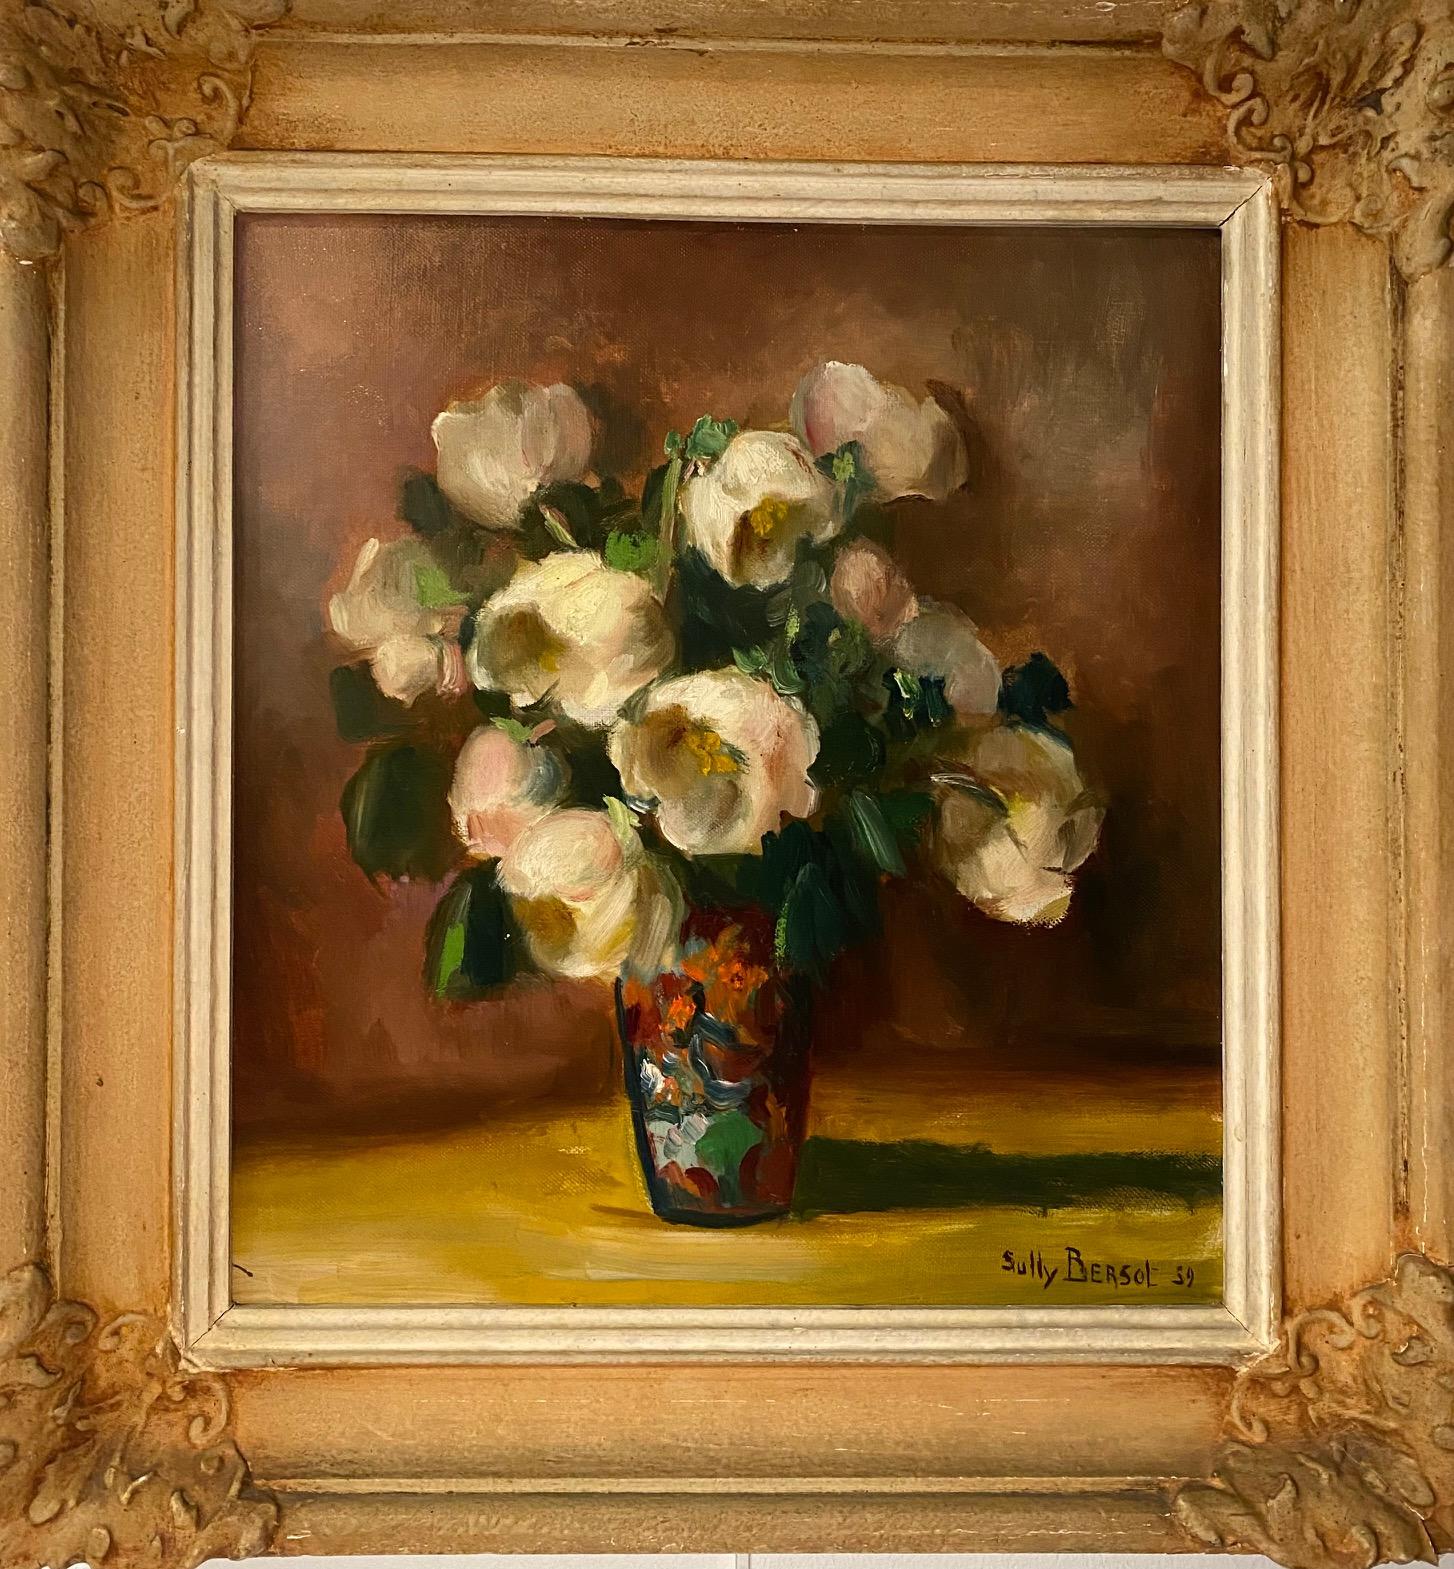 Sully Bersot ist ein Schweizer Maler, der im 20. Jahrhundert geboren wurde. 
Das Werk wird rahmenweise verkauft, 
Gesamtgröße mit Rahmen: 43,5x46,5 cm